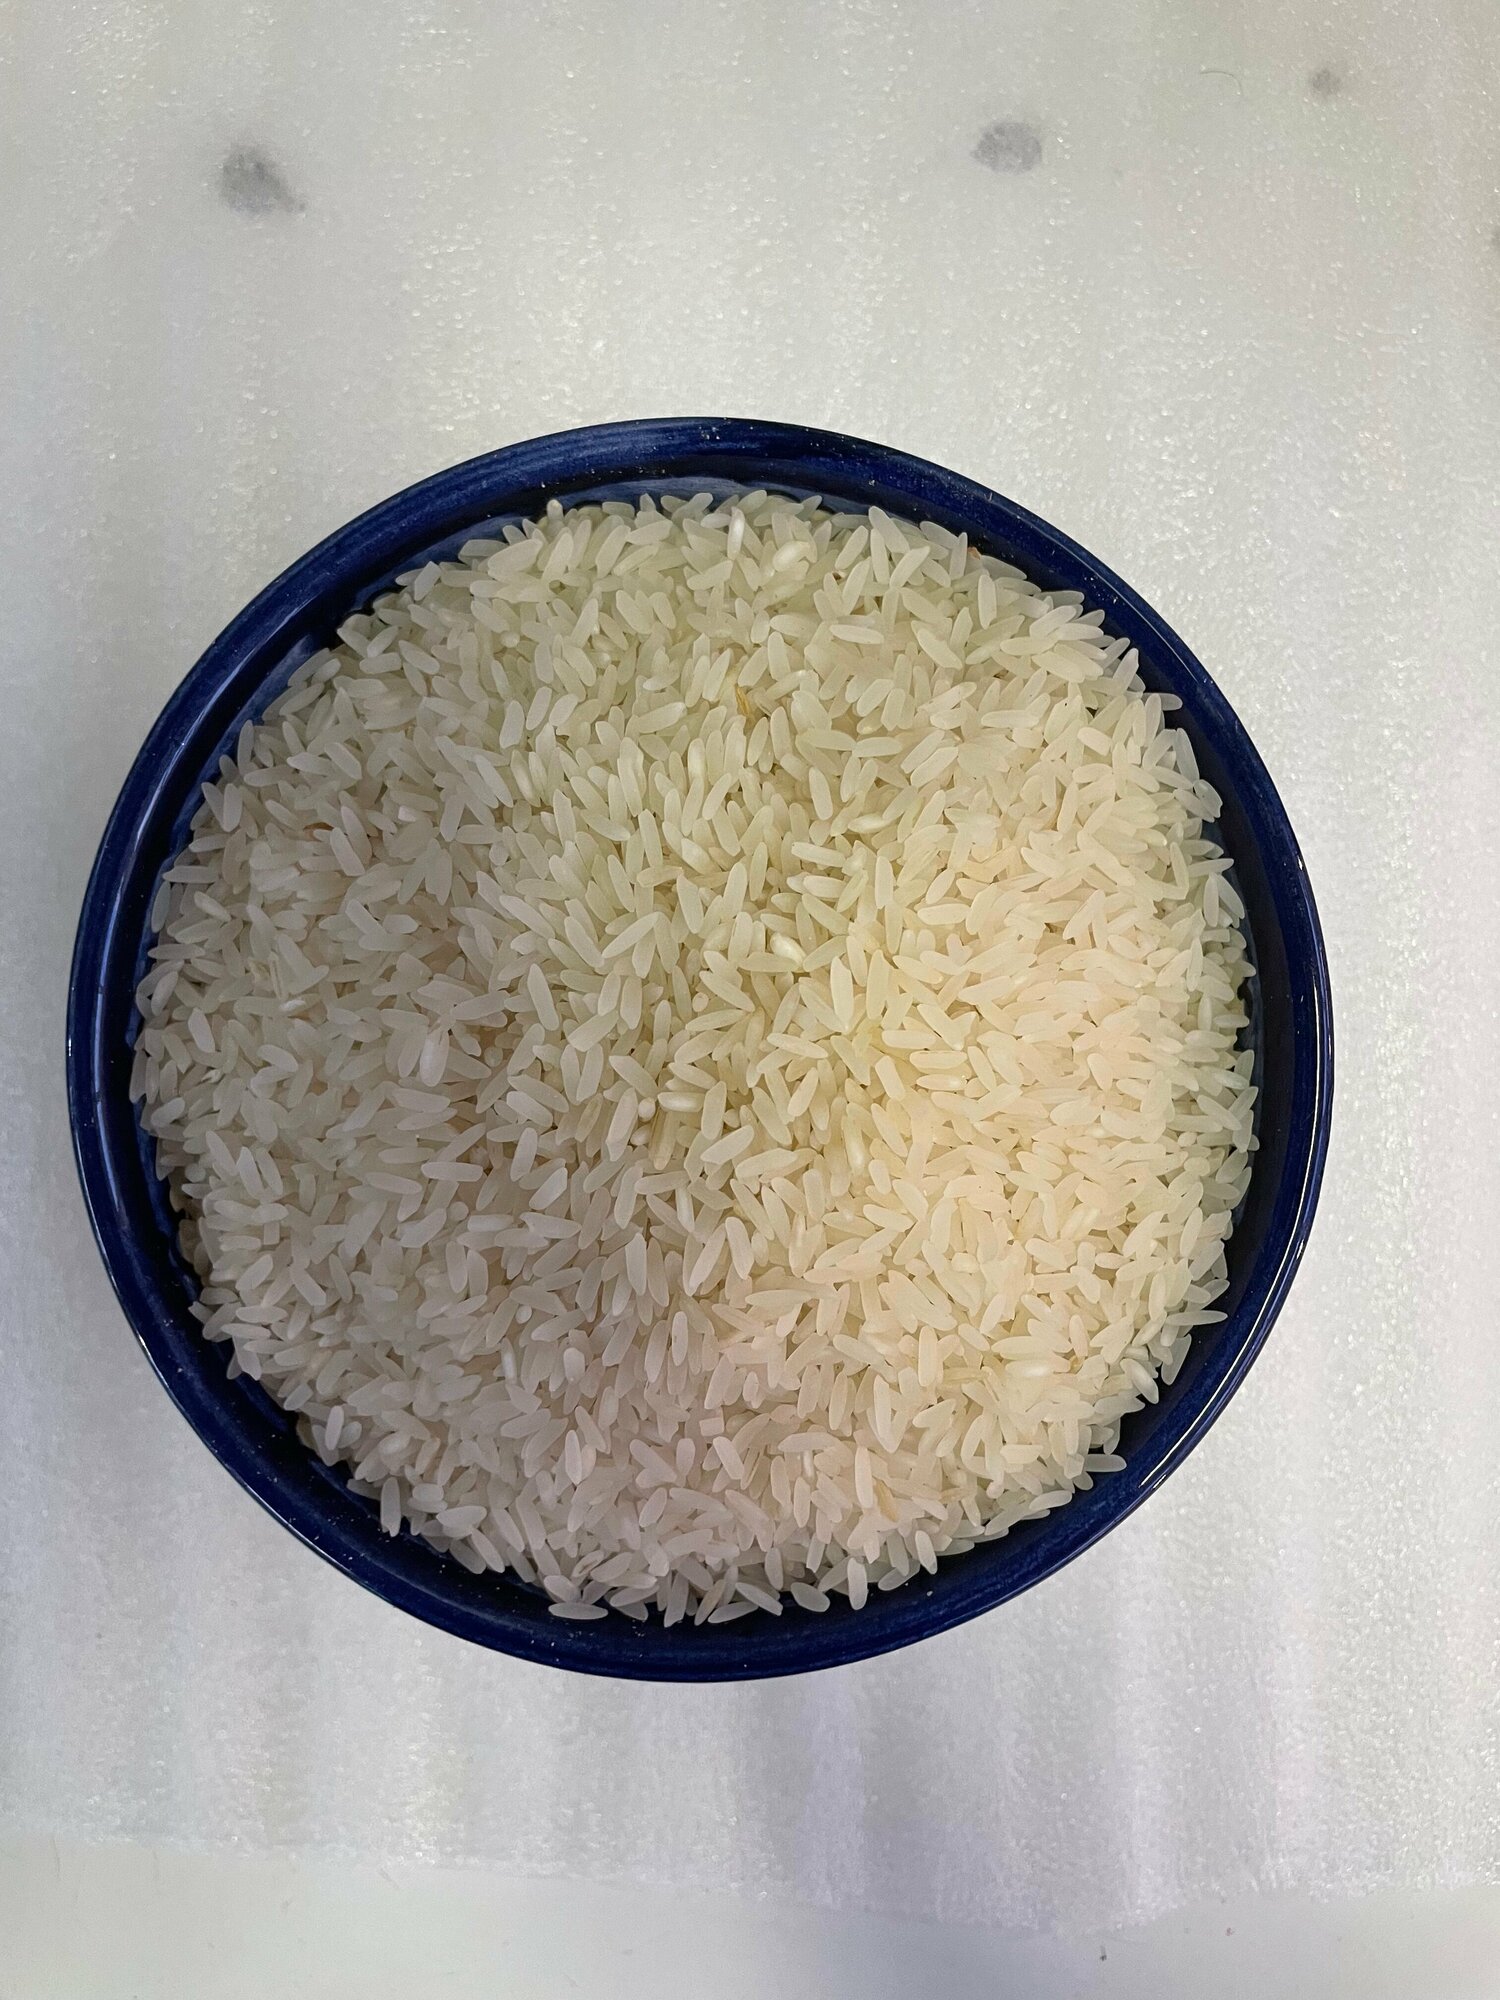 Рис Ташкентский лазер, шлифованный,1 кг, высшего качества